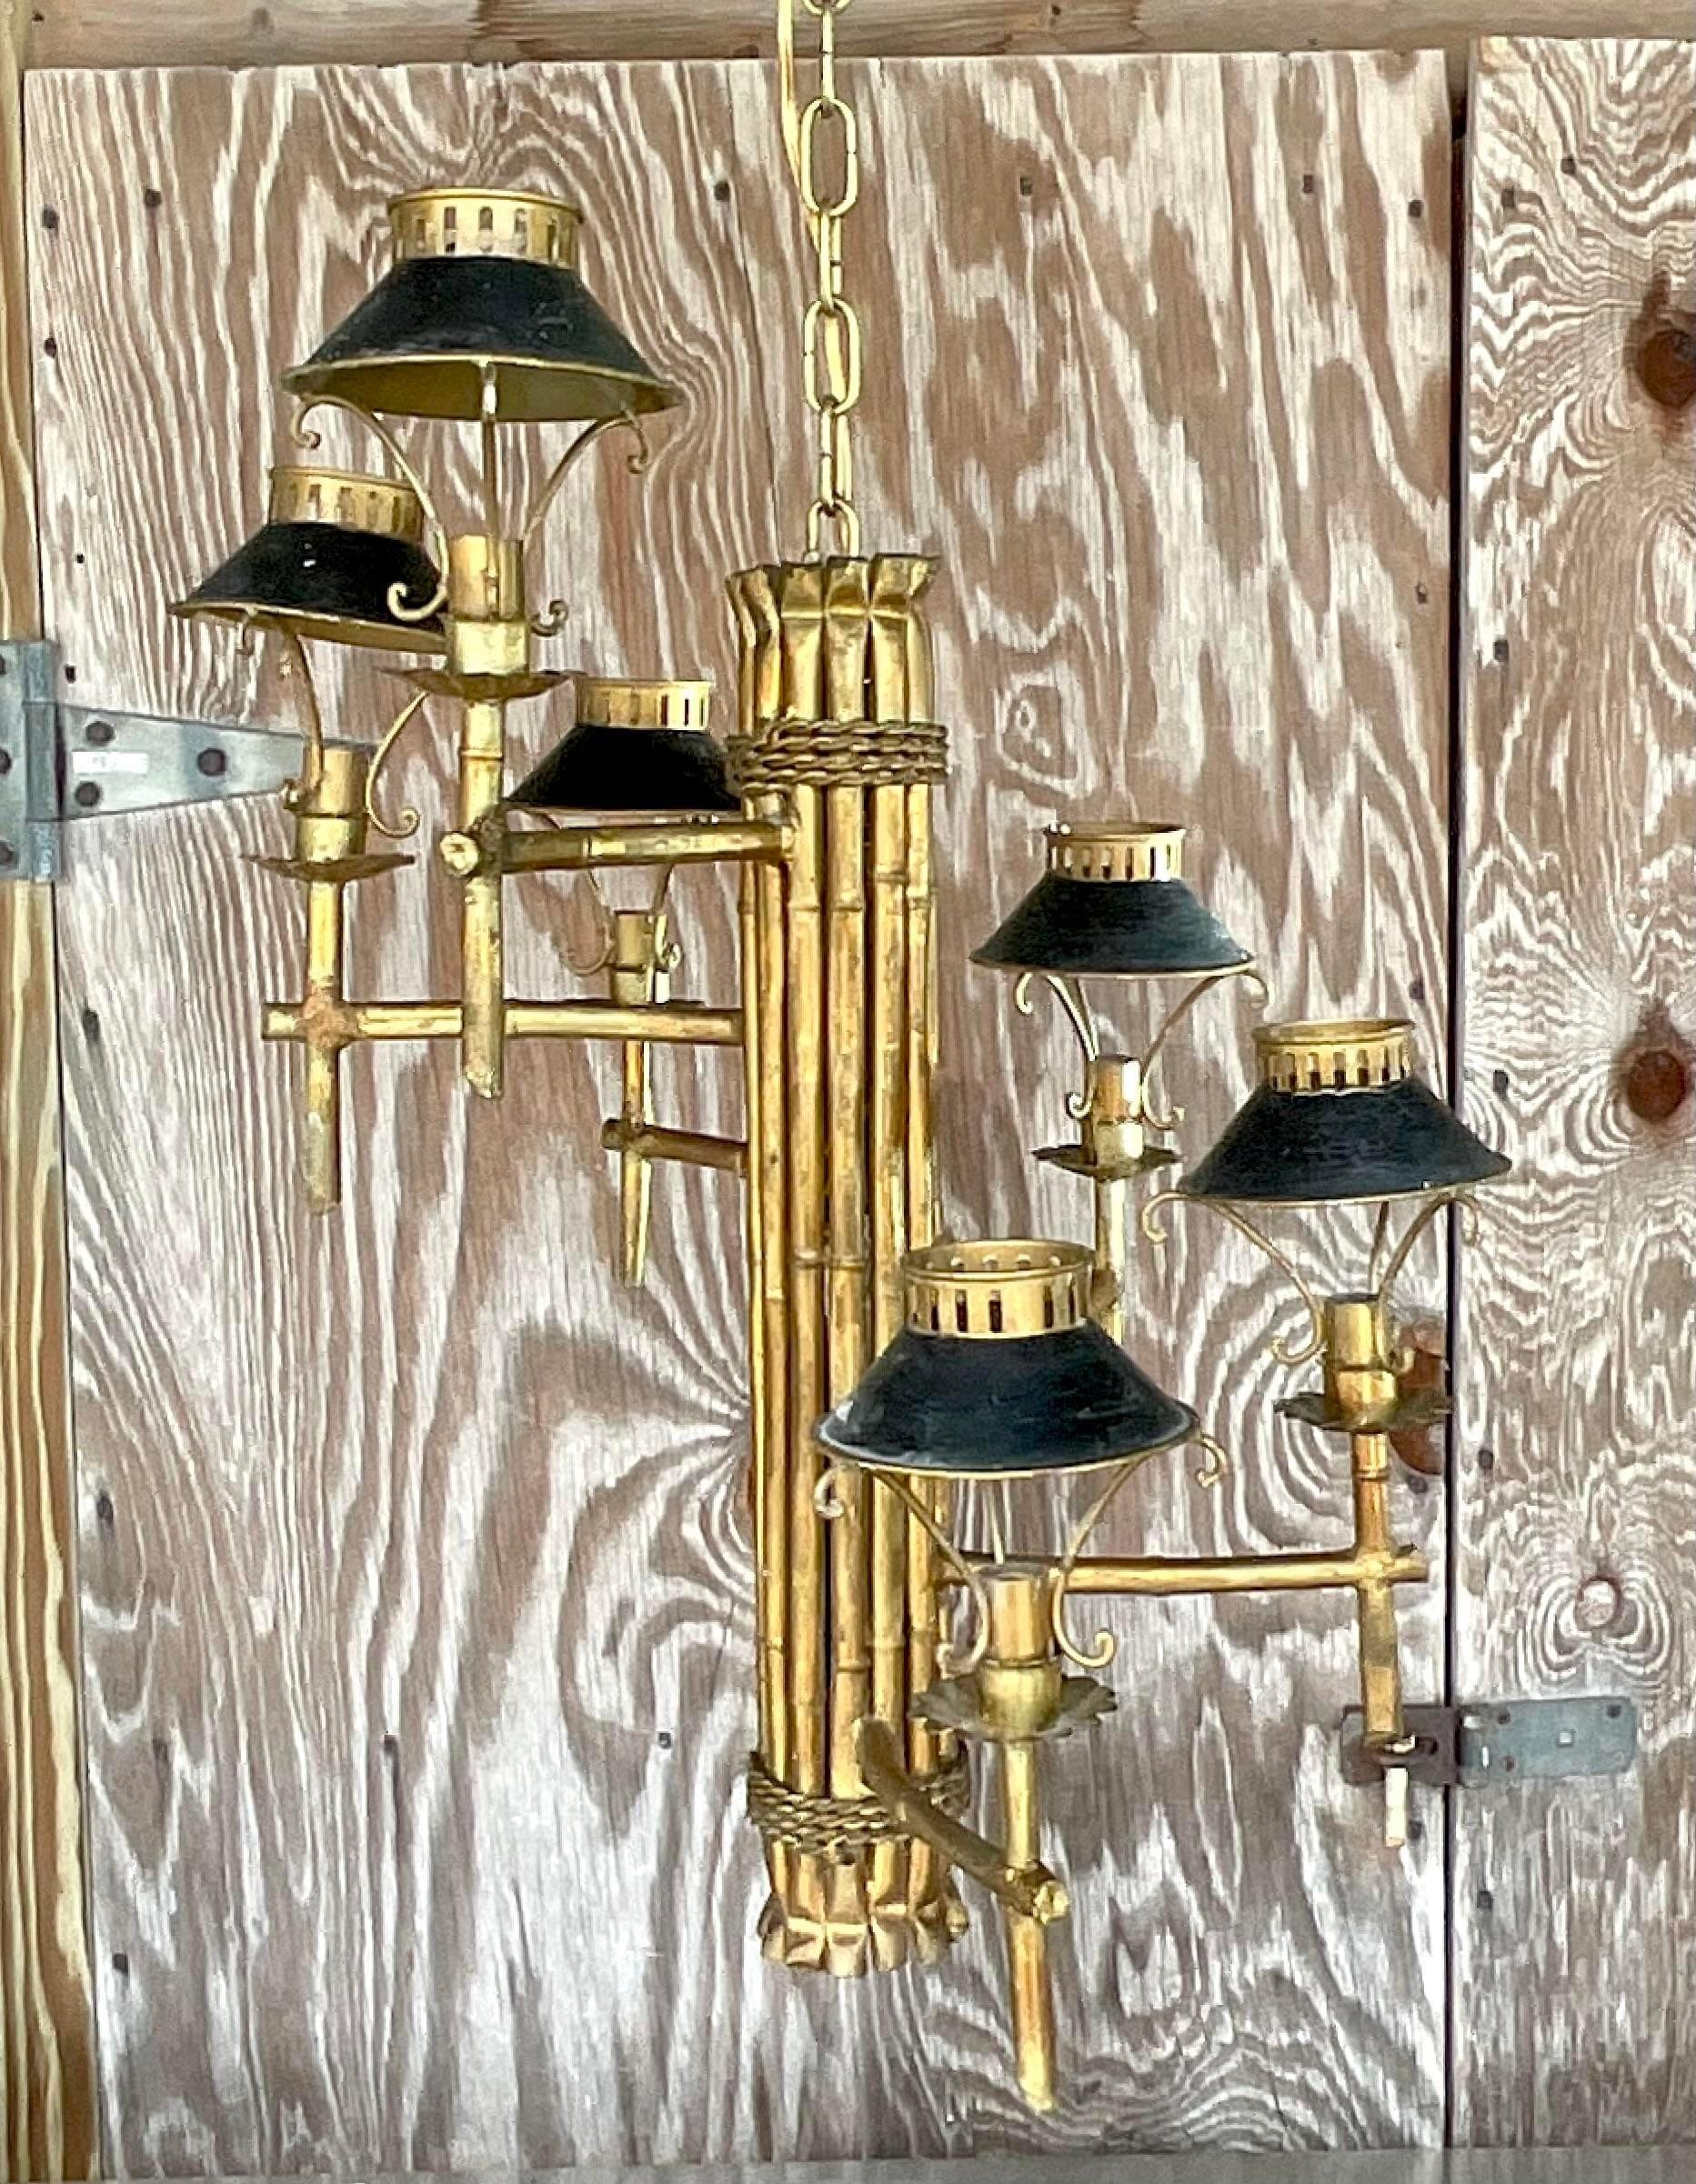 Ein fabelhafter Regency-Spiralkronleuchter im Vintage-Stil. Ein schicker vergoldeter Bambus-Mittelpfosten mit einem spiralförmigen Ring aus kleinen Laternen. Perfekt für ein hohes Treppenhaus! Erworben aus einem Nachlass in Palm Beach.